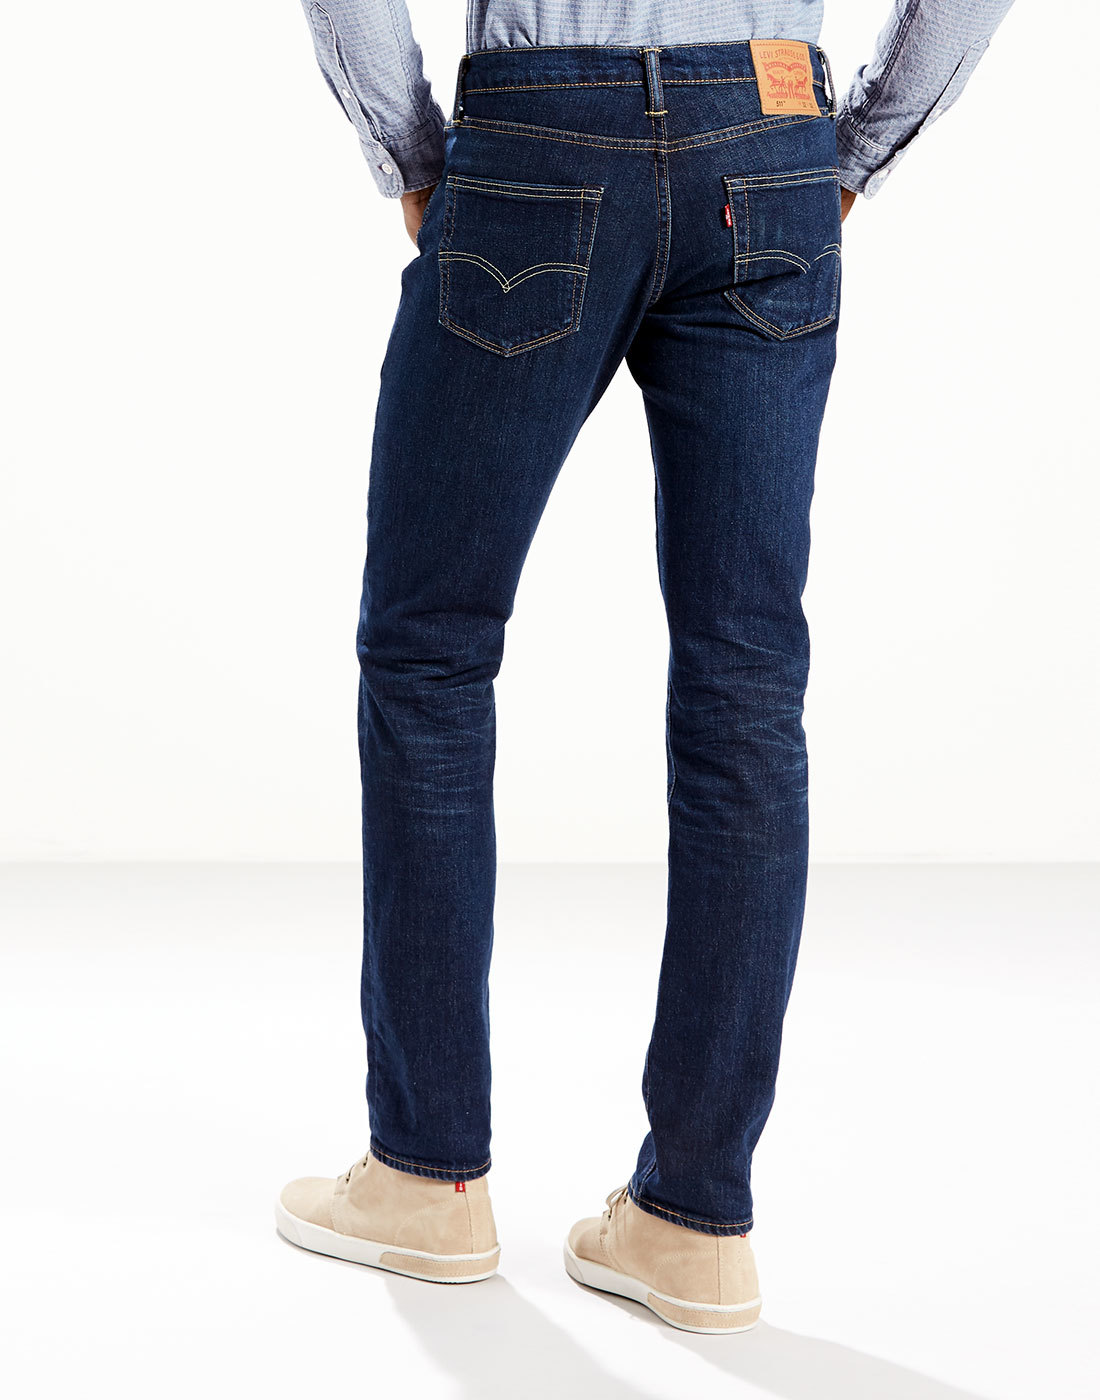 LEVI'S® 511 Men's Retro Mod Slim Denim Jeans in Vintage Heart